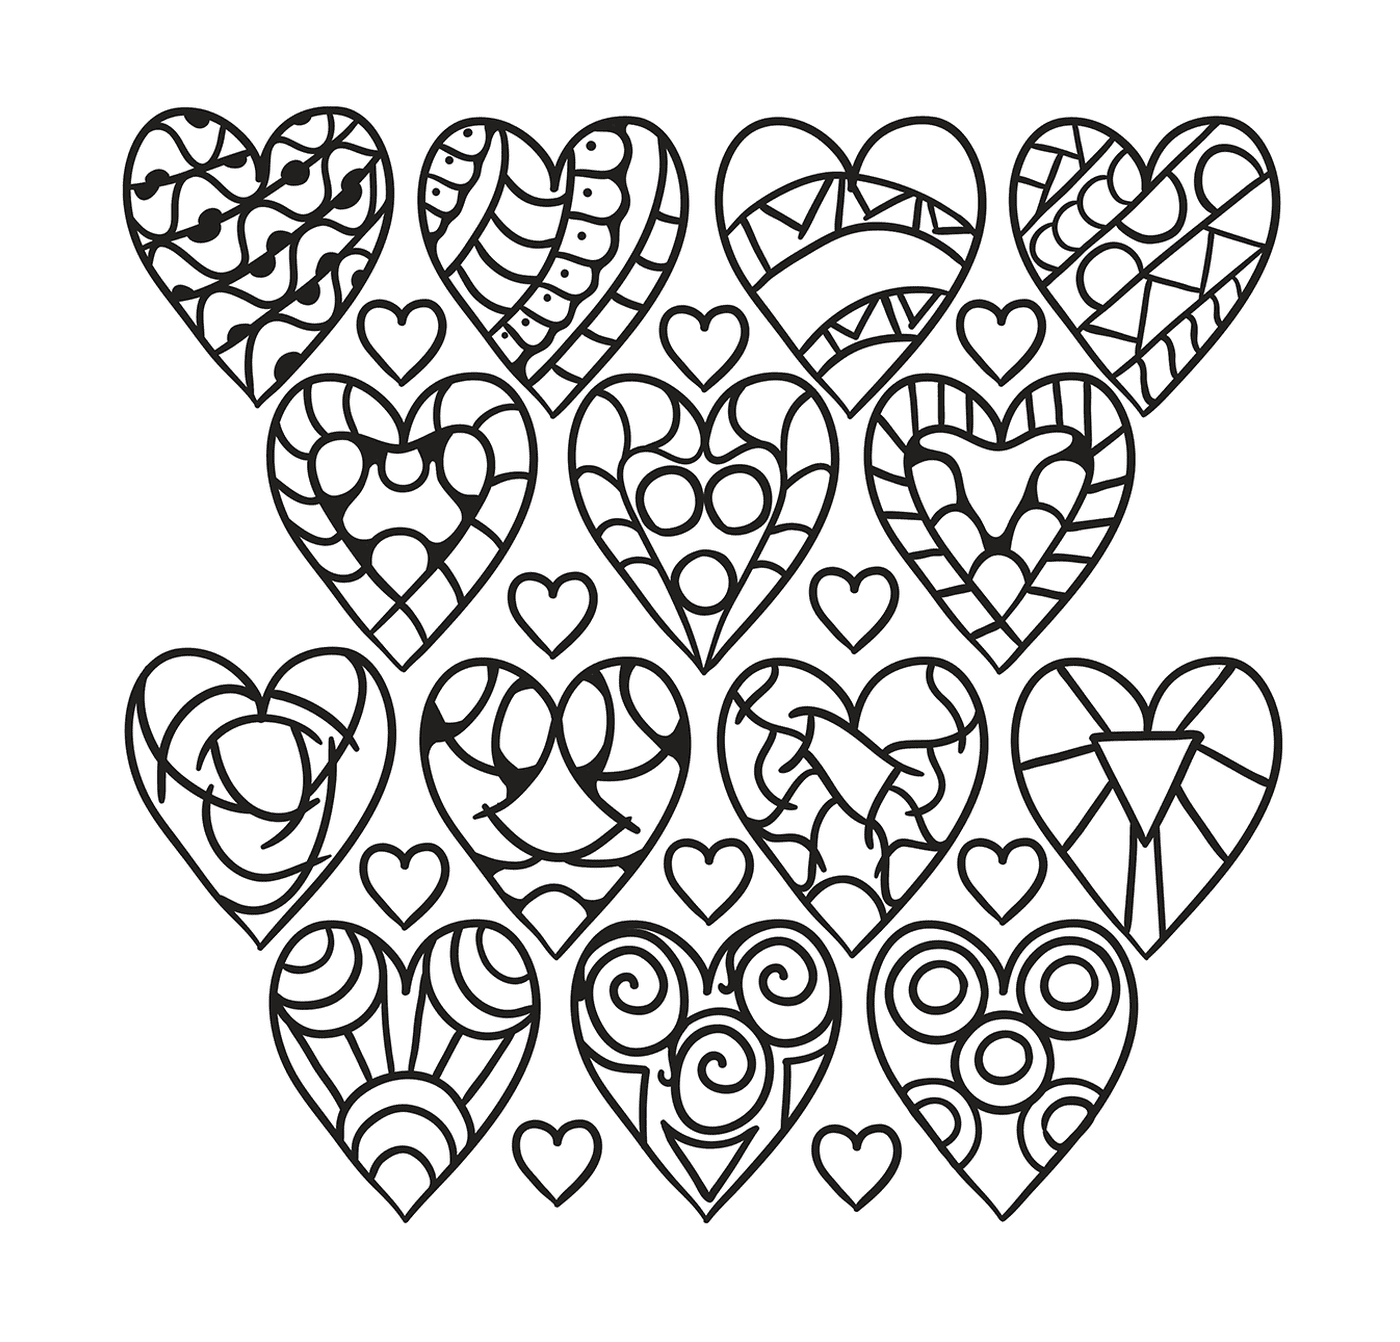  Colección de corazones con diversas formas 